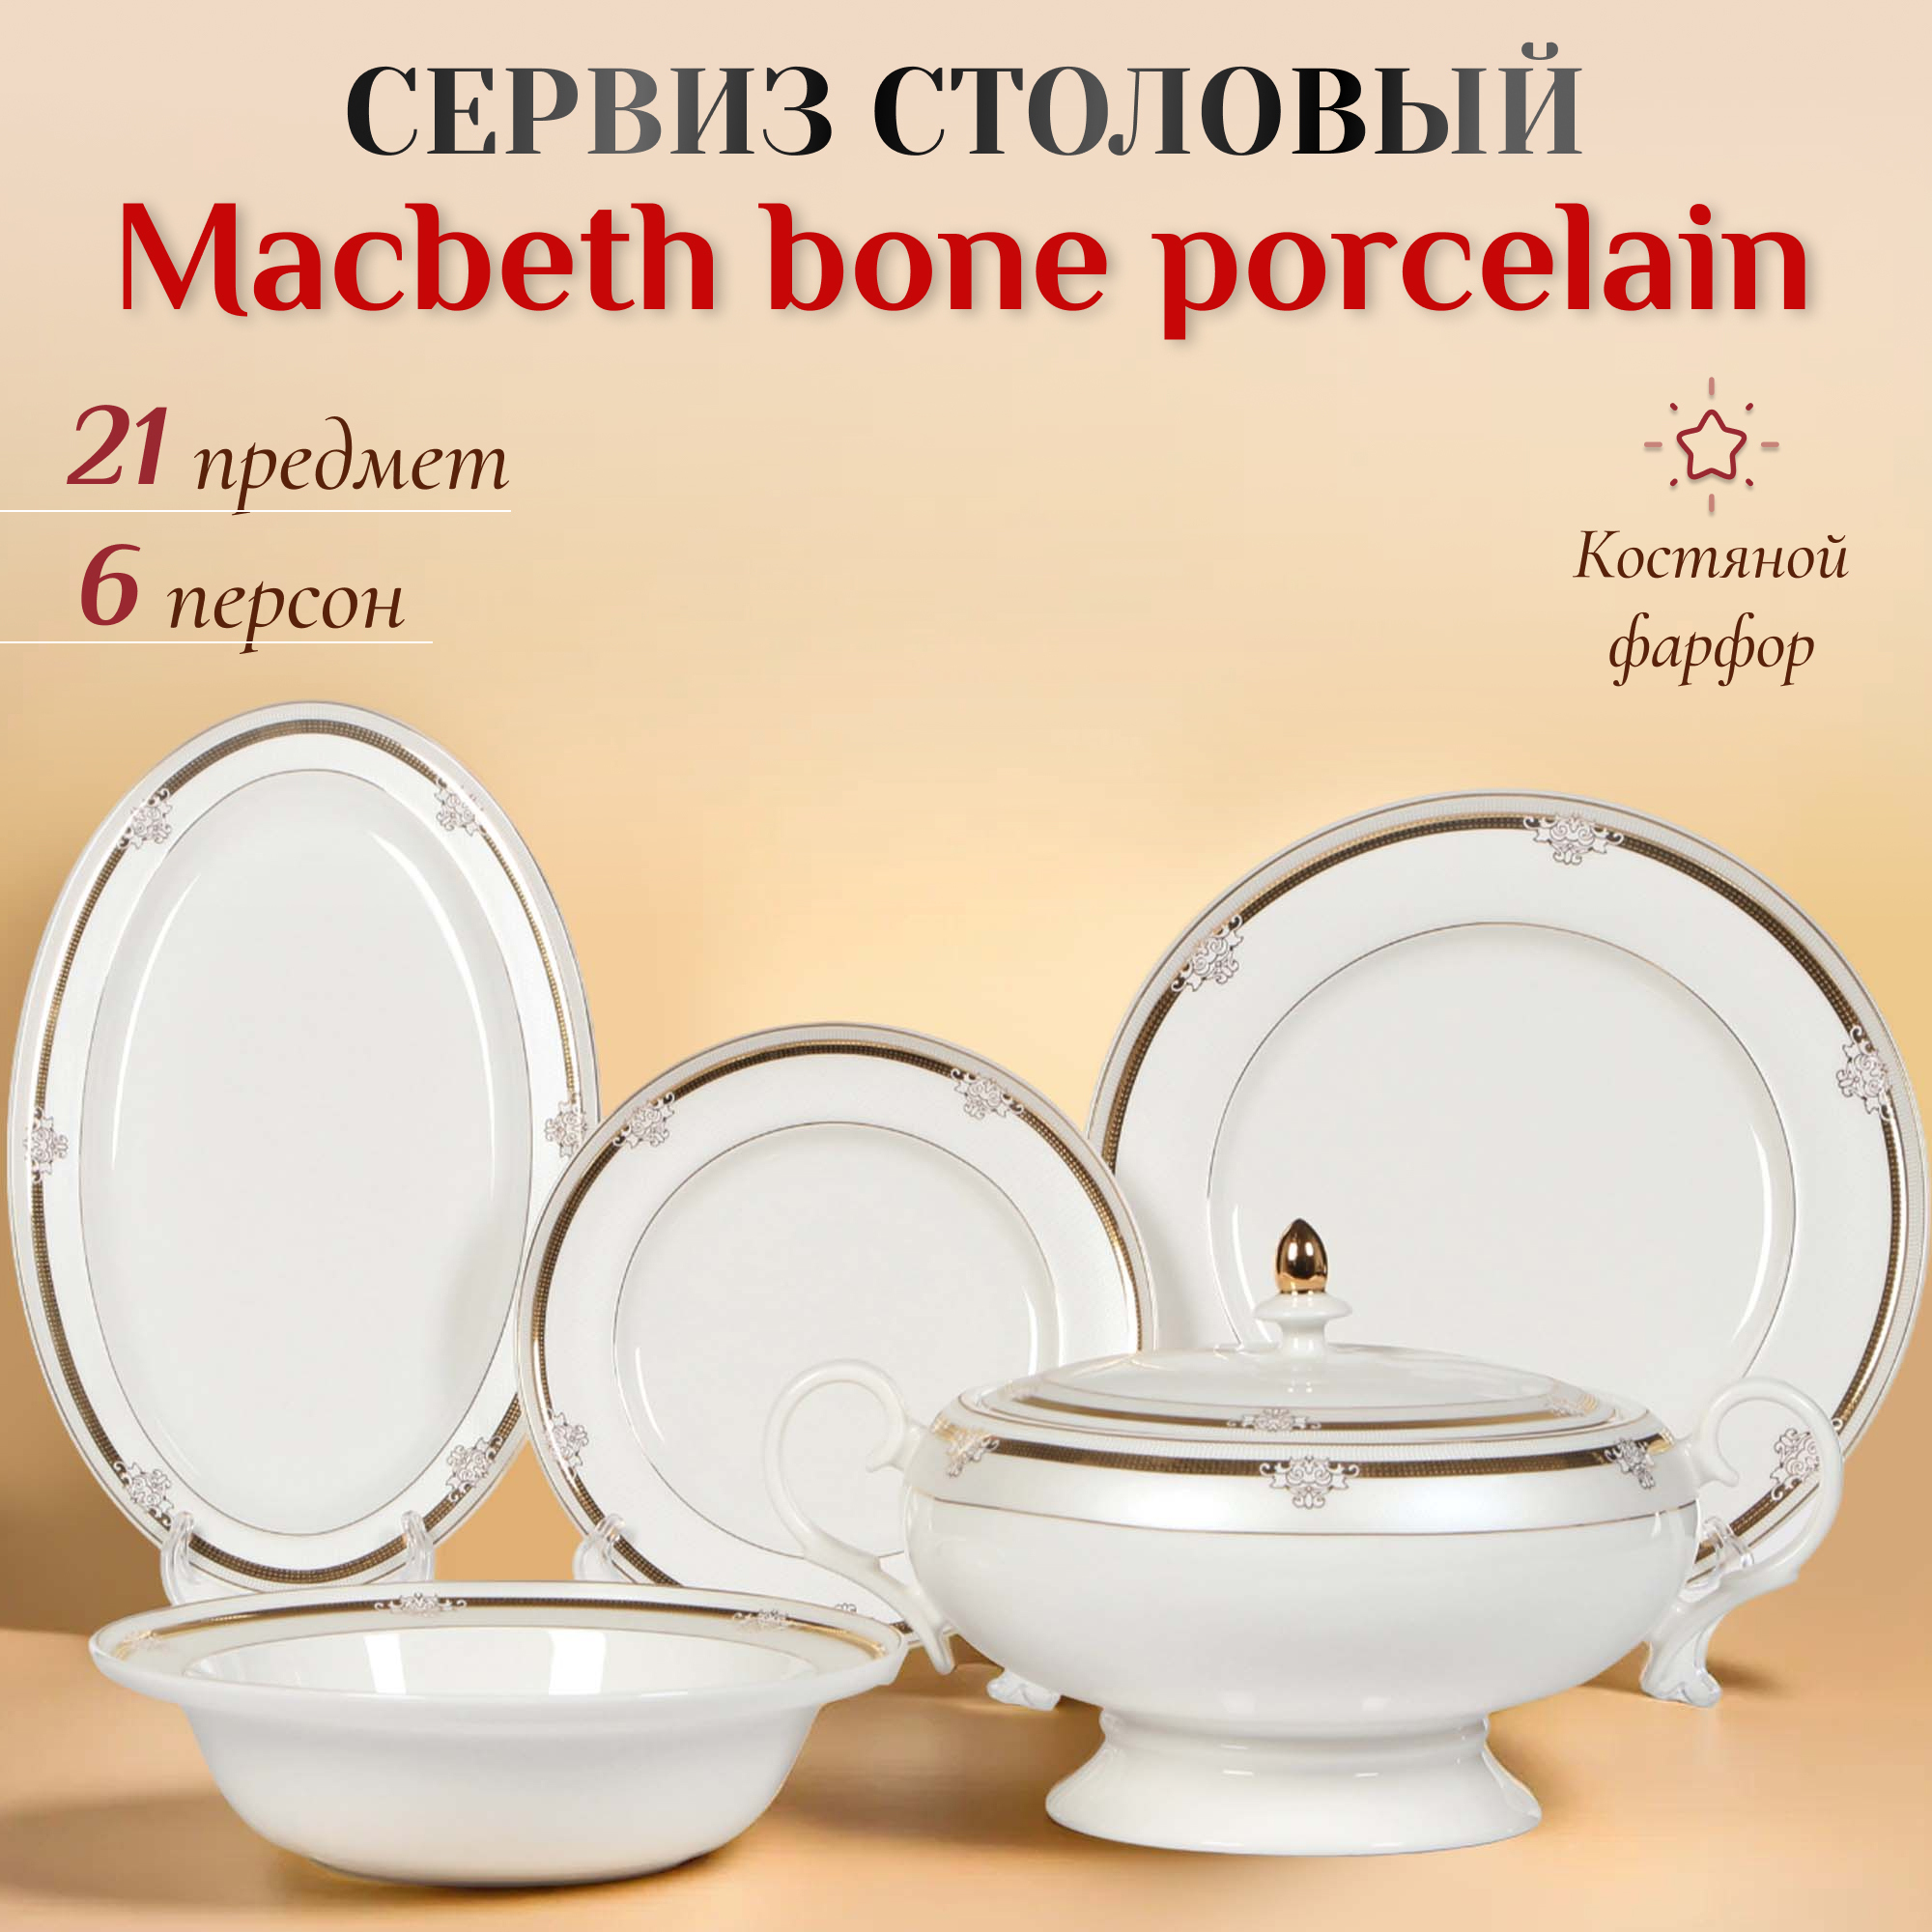 фото Сервиз столовый macbeth bone porcelain elizabeth 21 предмет 6 персон